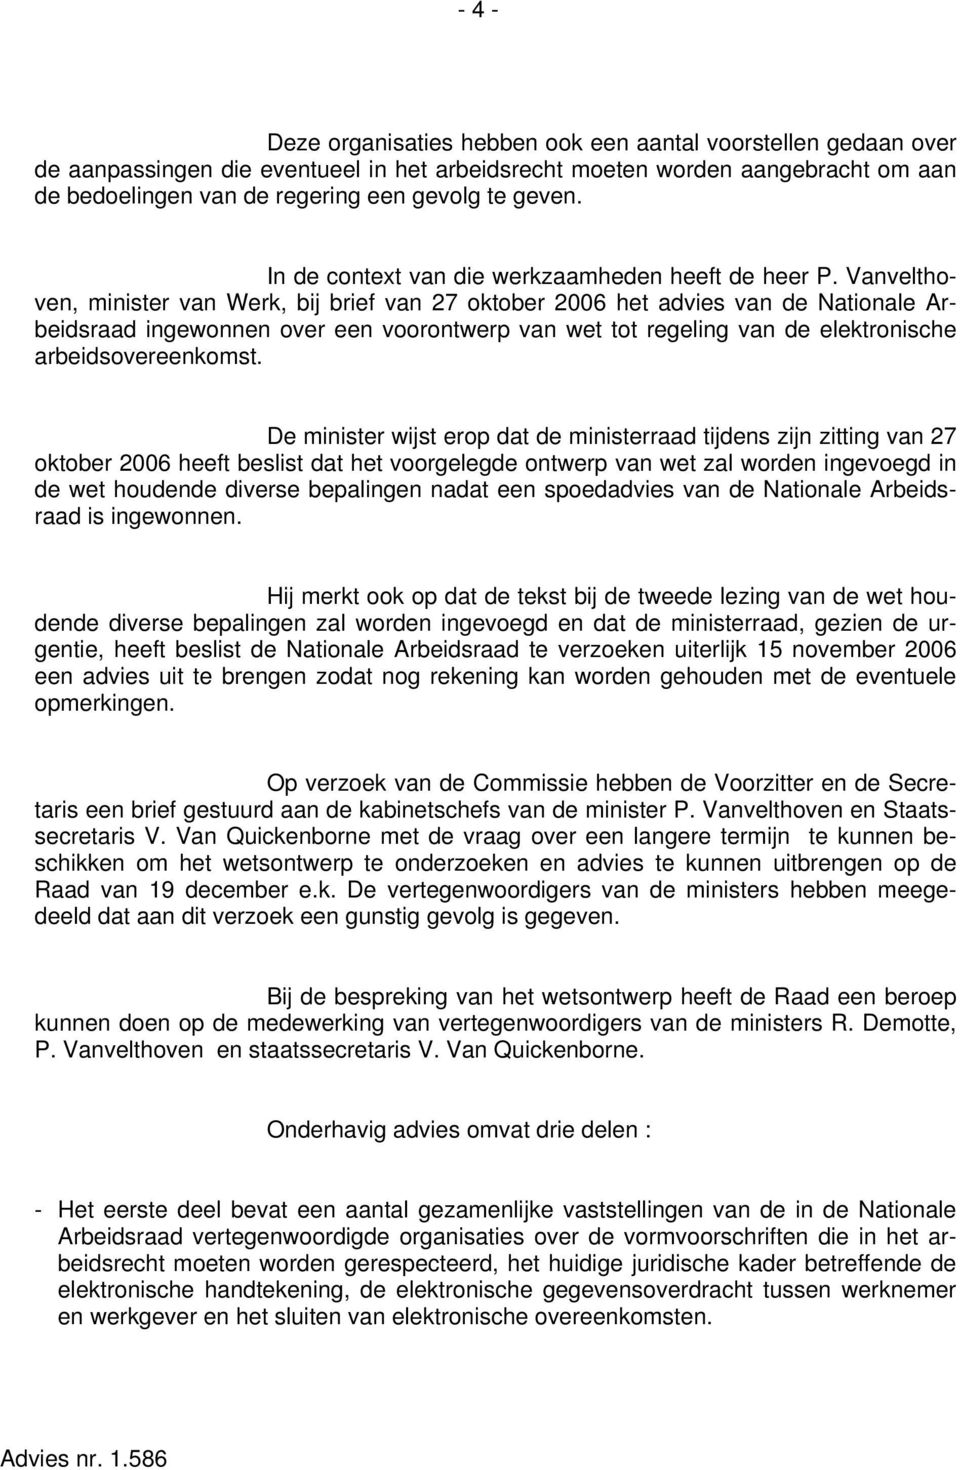 Vanvelthoven, minister van Werk, bij brief van 27 oktober 2006 het advies van de Nationale Arbeidsraad ingewonnen over een voorontwerp van wet tot regeling van de elektronische arbeidsovereenkomst.